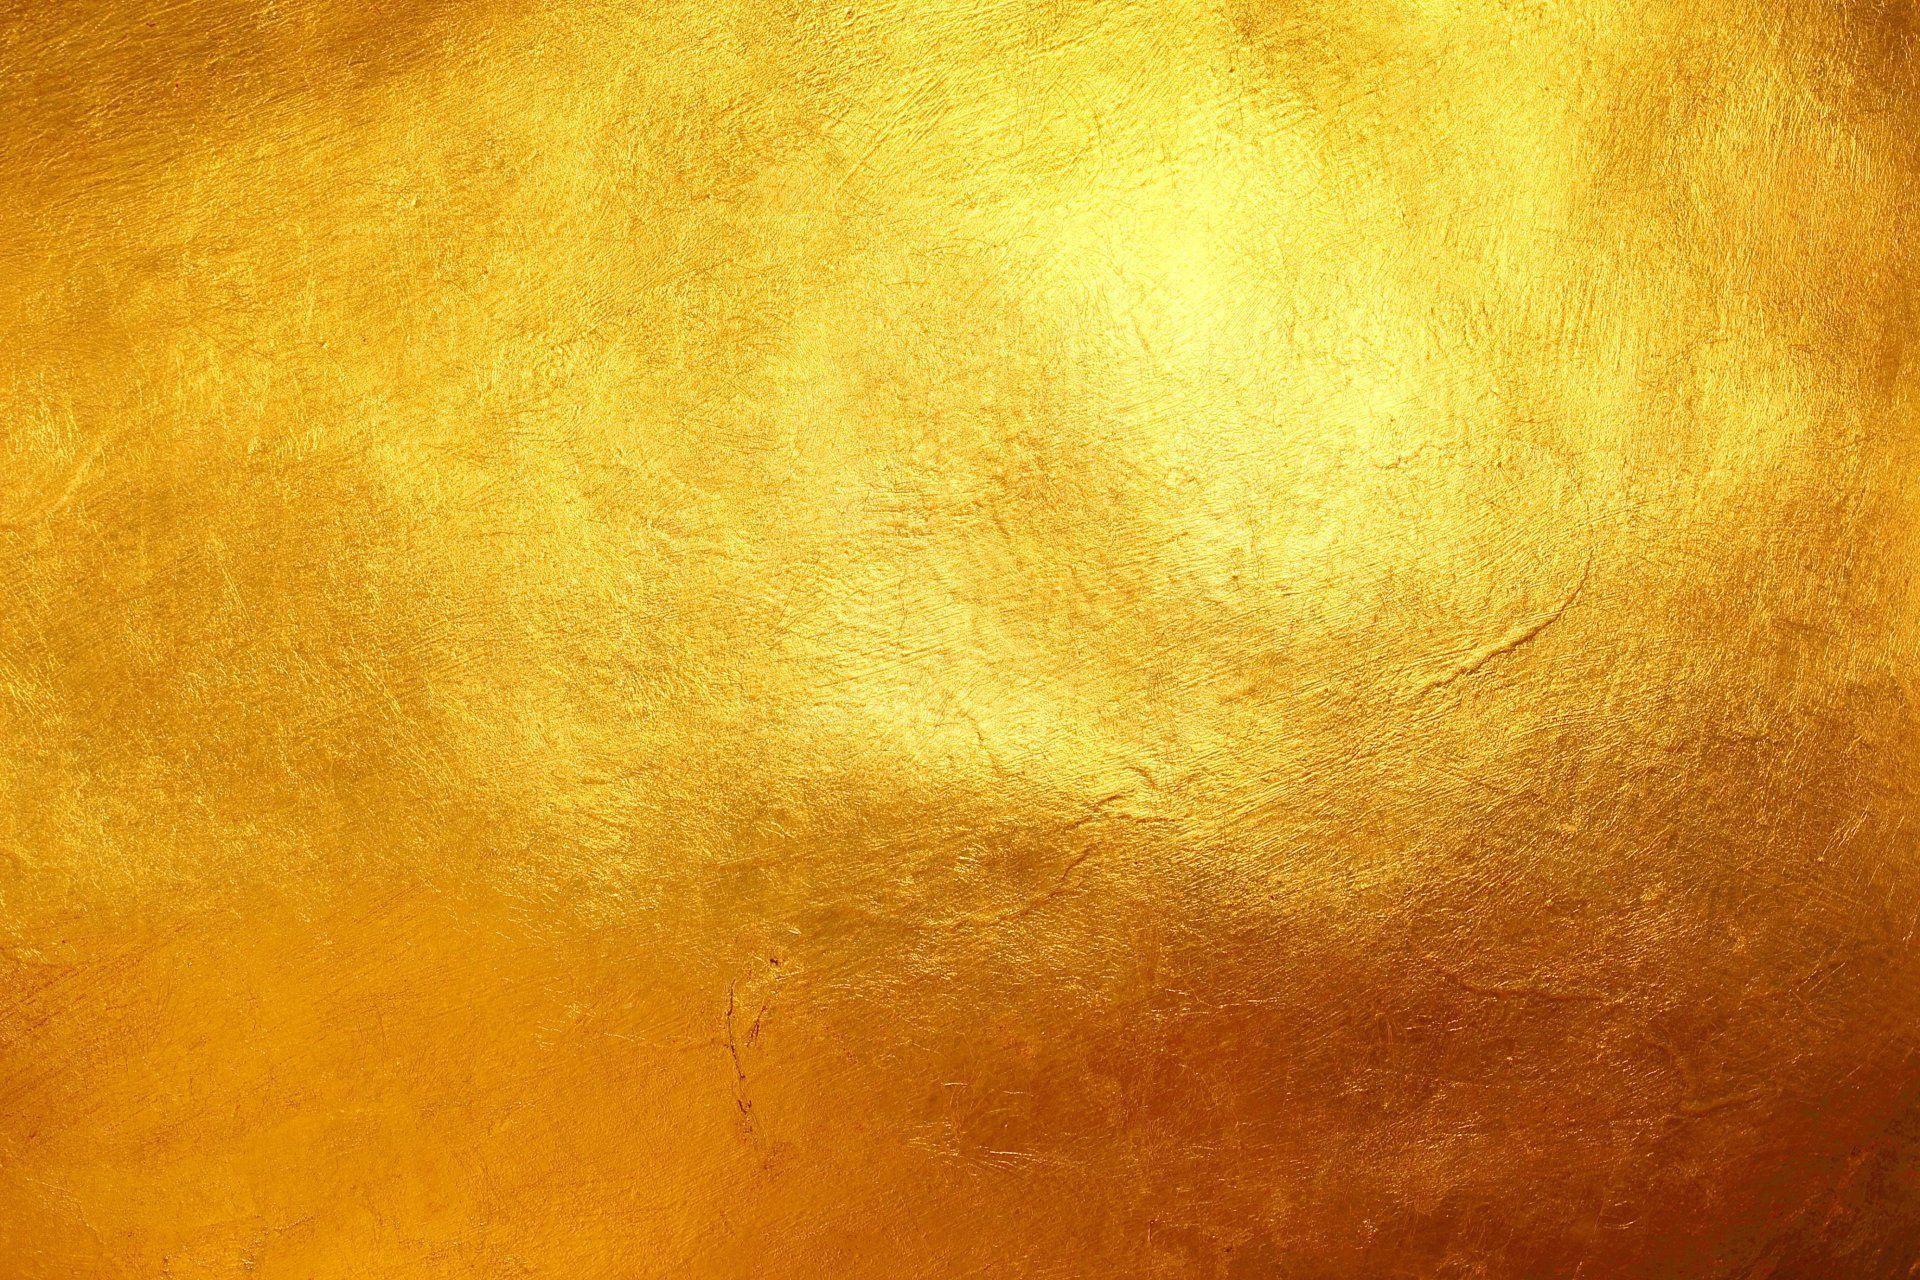 Hình nền vàng HD - Wallpaper Cave: Bạn muốn tìm kiếm một hình nền vàng HD có chất lượng tốt? Hãy thăm trang web Wallpaper Cave để tìm thấy những bức ảnh xuất sắc và đẹp mắt. Với bộ sưu tập đa dạng và cập nhật liên tục, bạn sẽ không bao giờ cảm thấy nhàm chán với những hình nền vàng này.